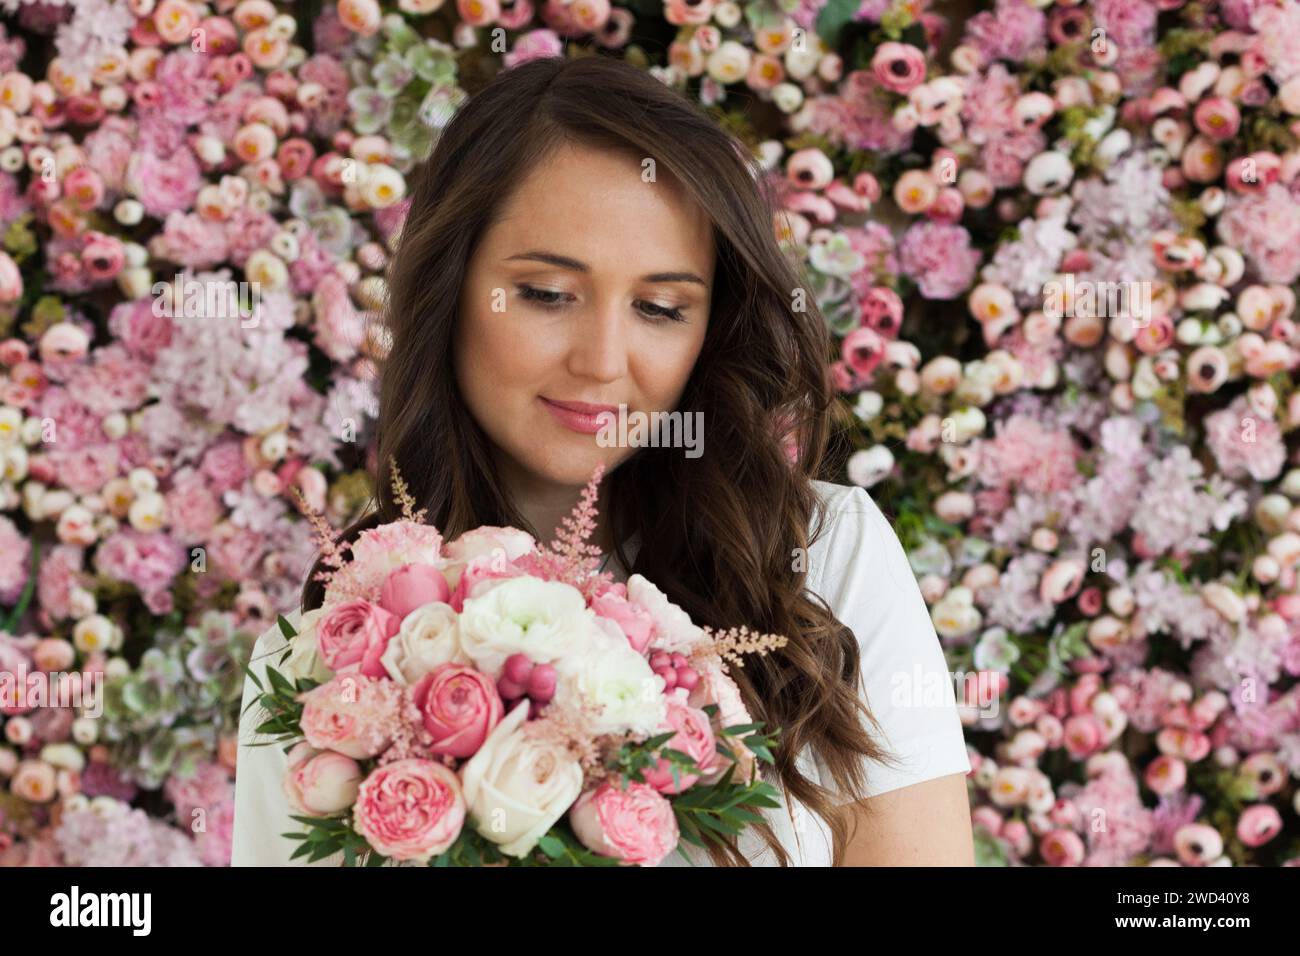 Stilvolles weibliches Modell mit Rosenblume in der Hand, das auf blühendem Blumenblütenhintergrund steht. Liebe, 8. märz, Geburtstag und Feiertagsfrau Porträt Stockfoto